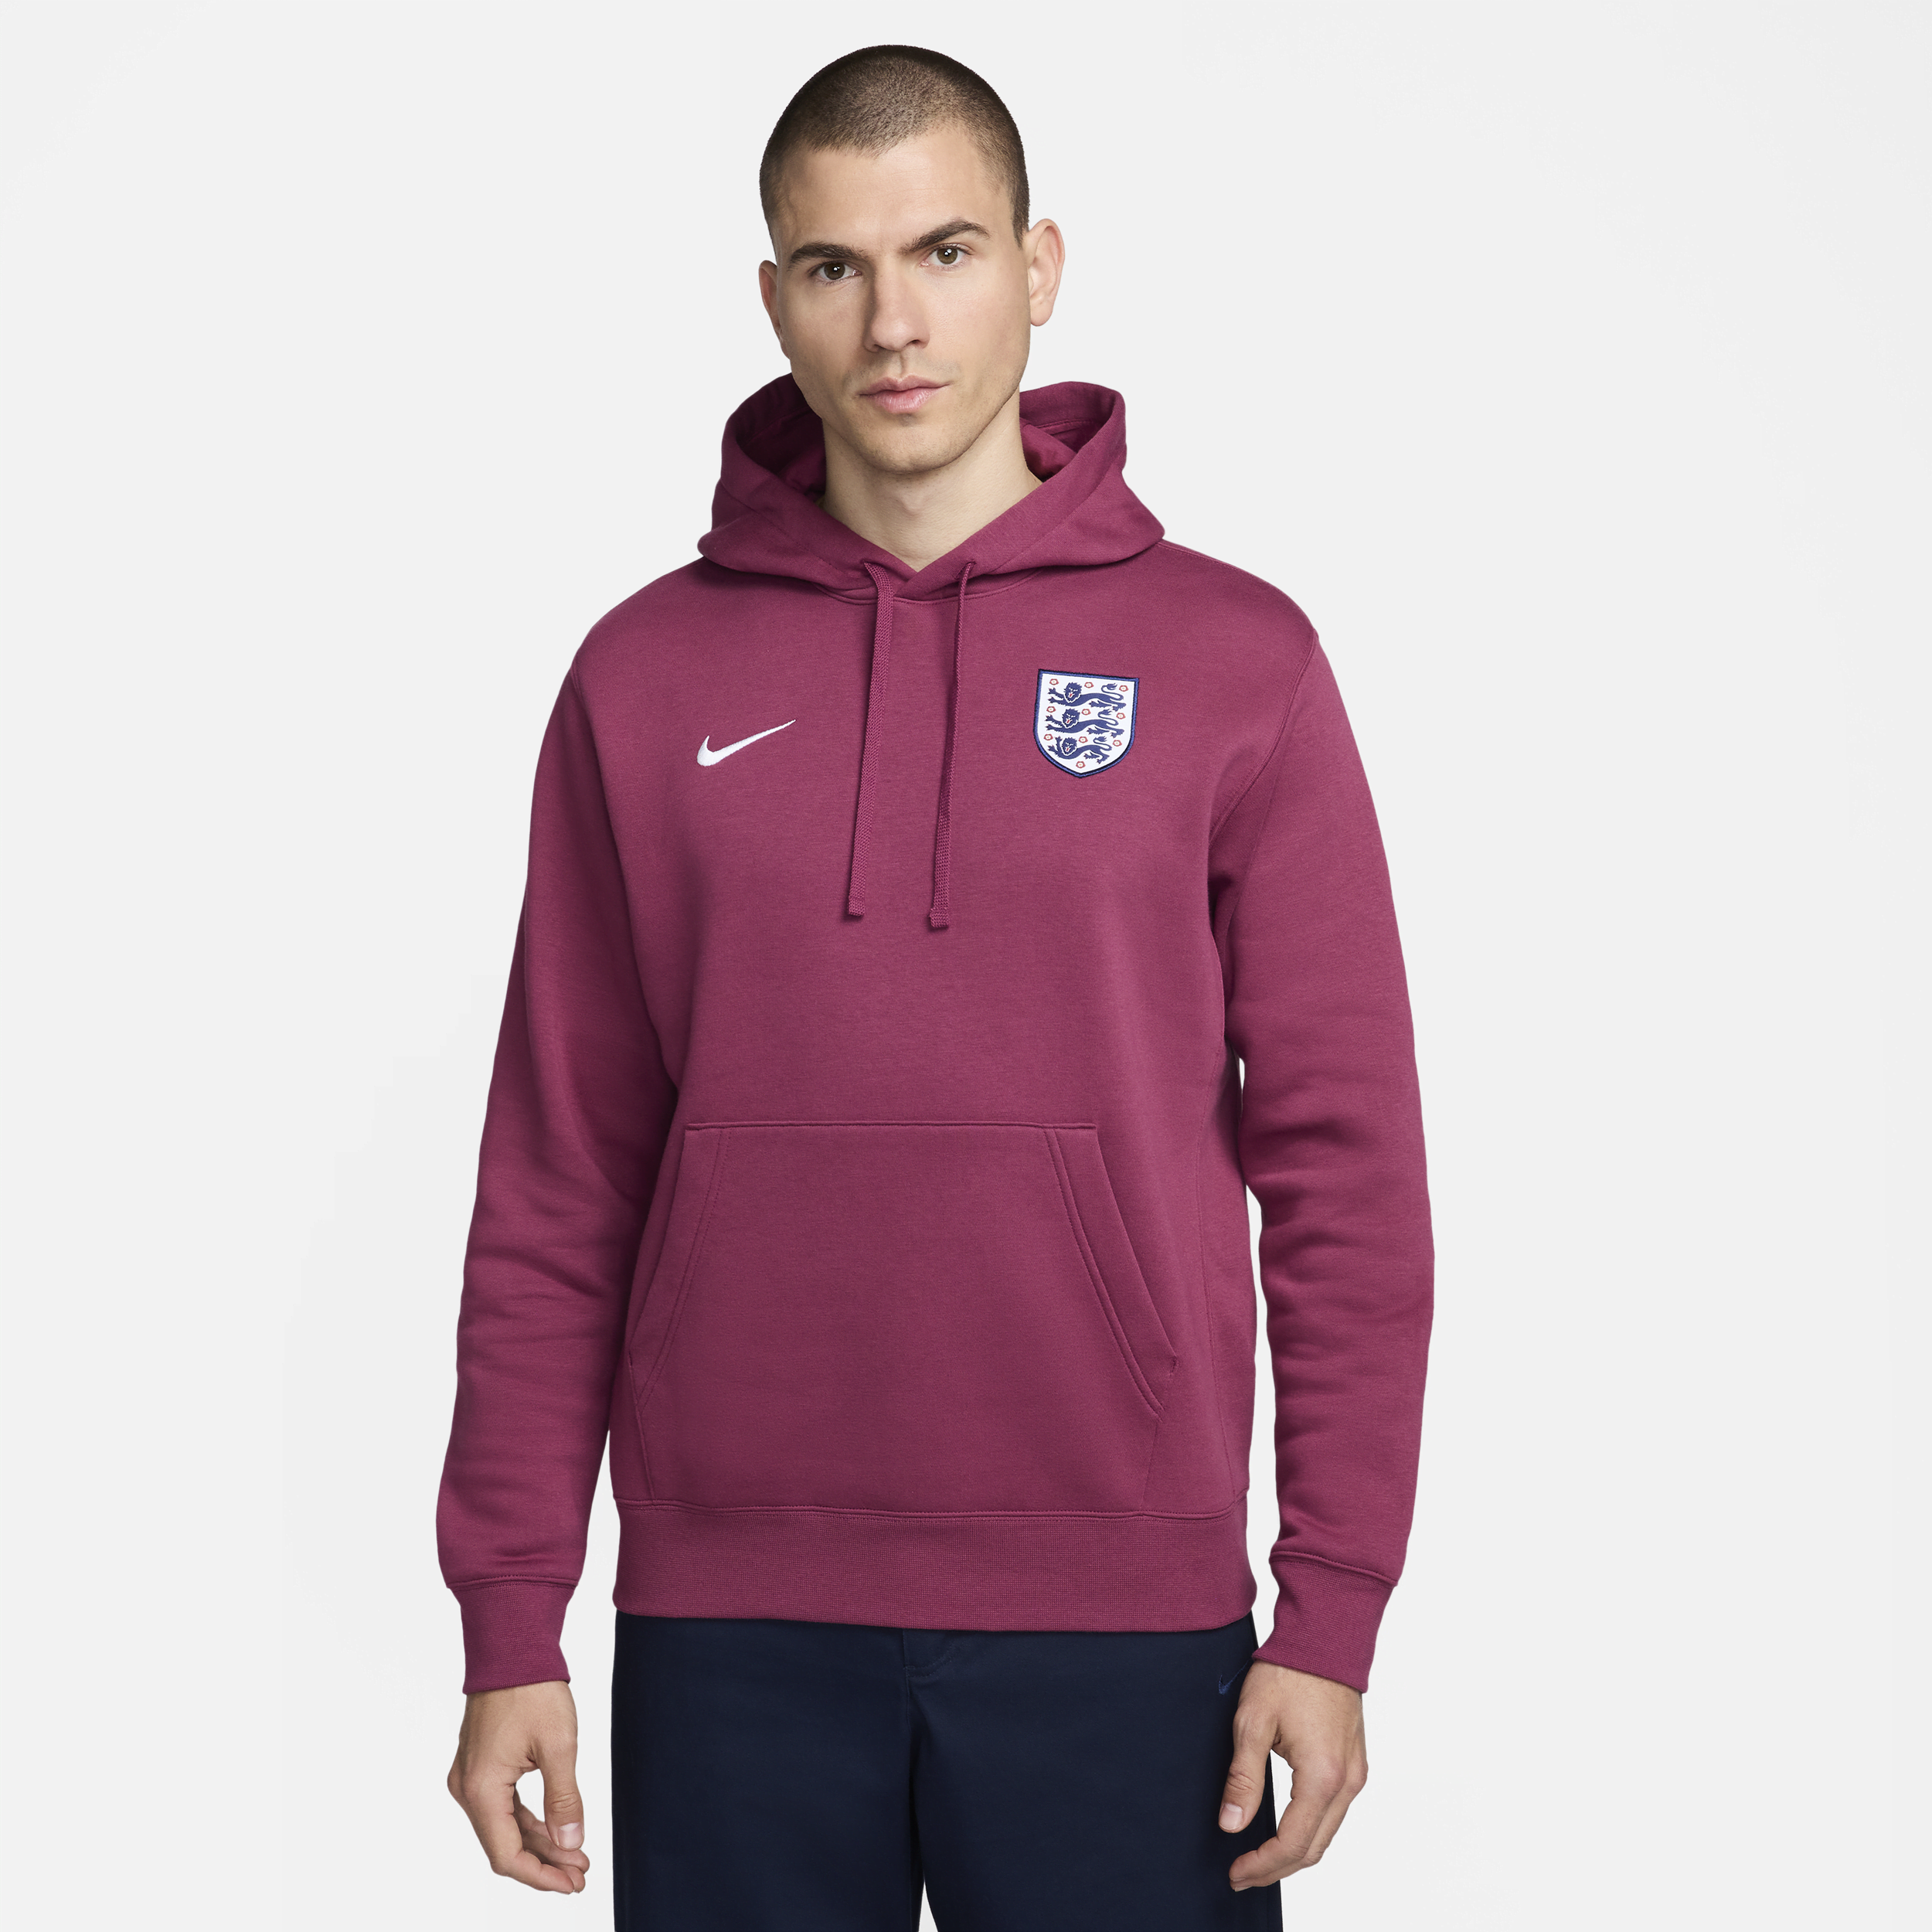 Felpa pullover da calcio con cappuccio Nike Inghilterra Club – Uomo - Rosso